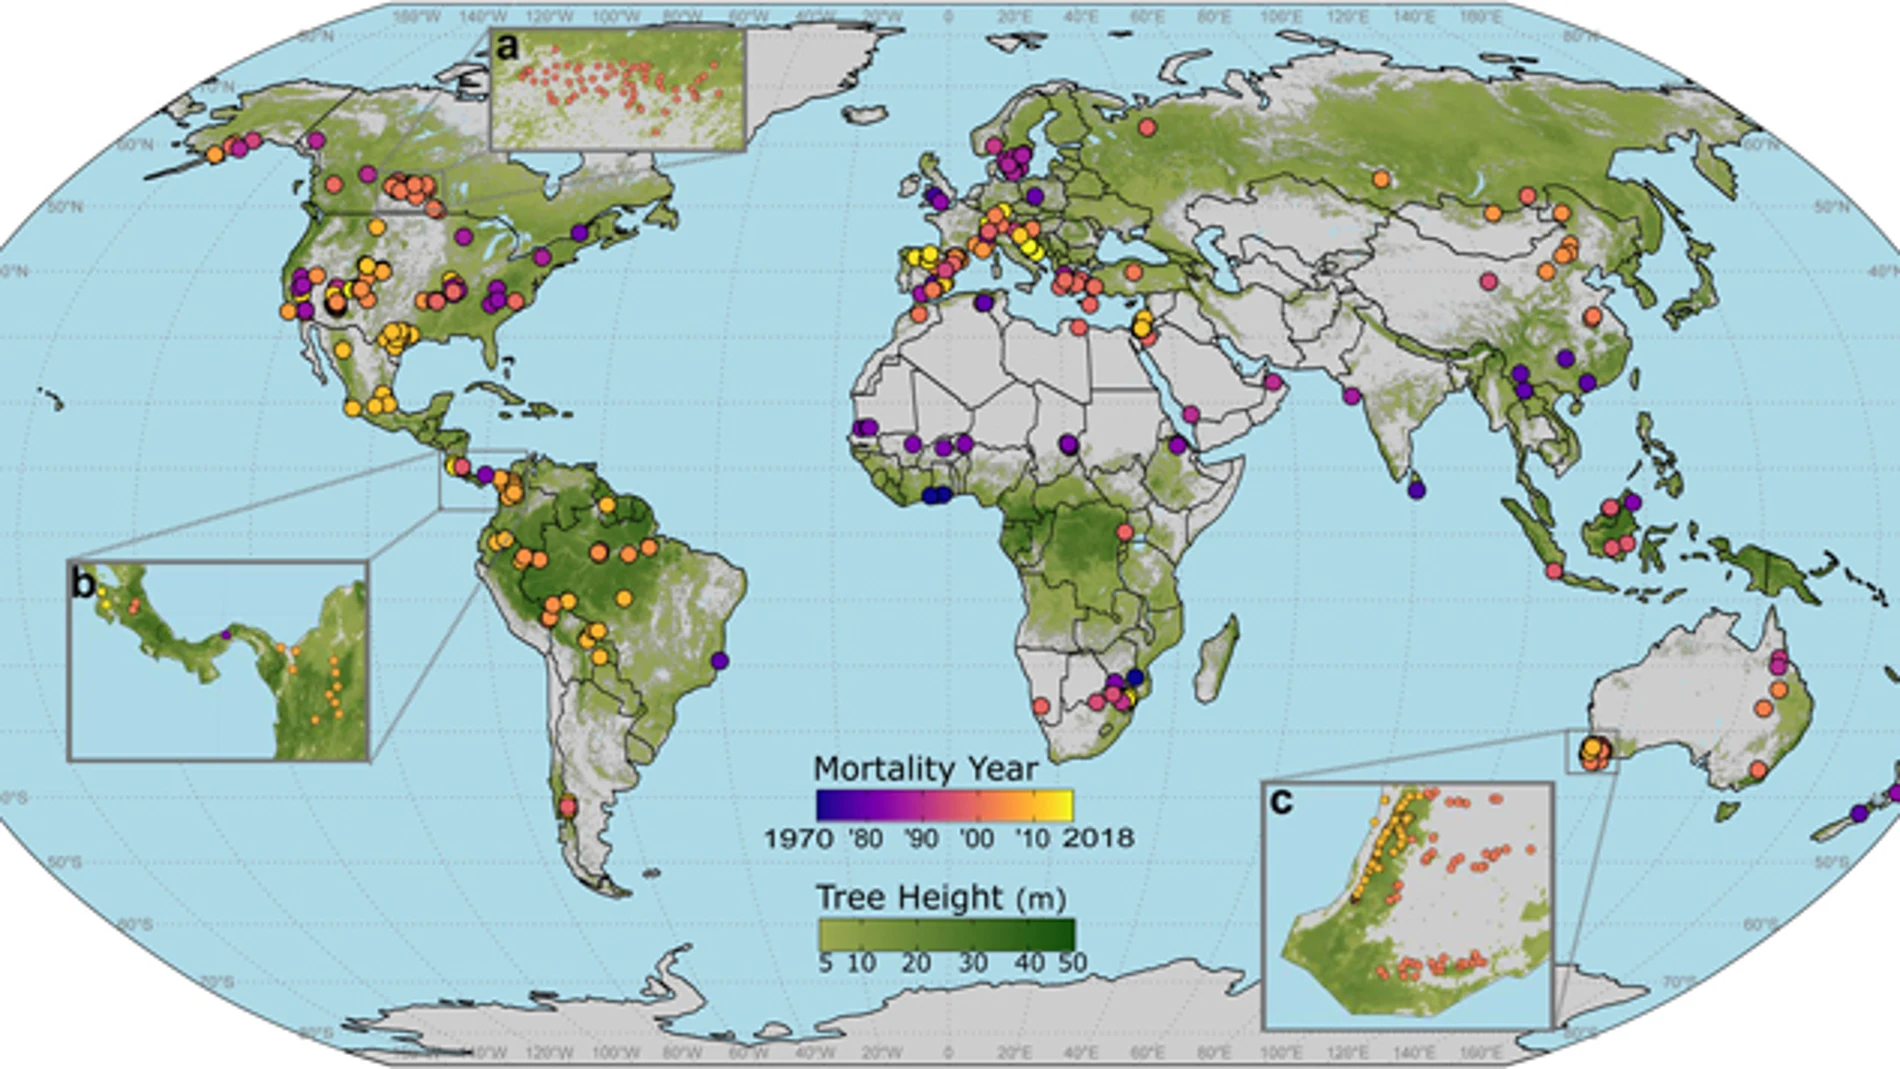 Distribución global de los eventos de mortalidad de árboles registrados en el planeta